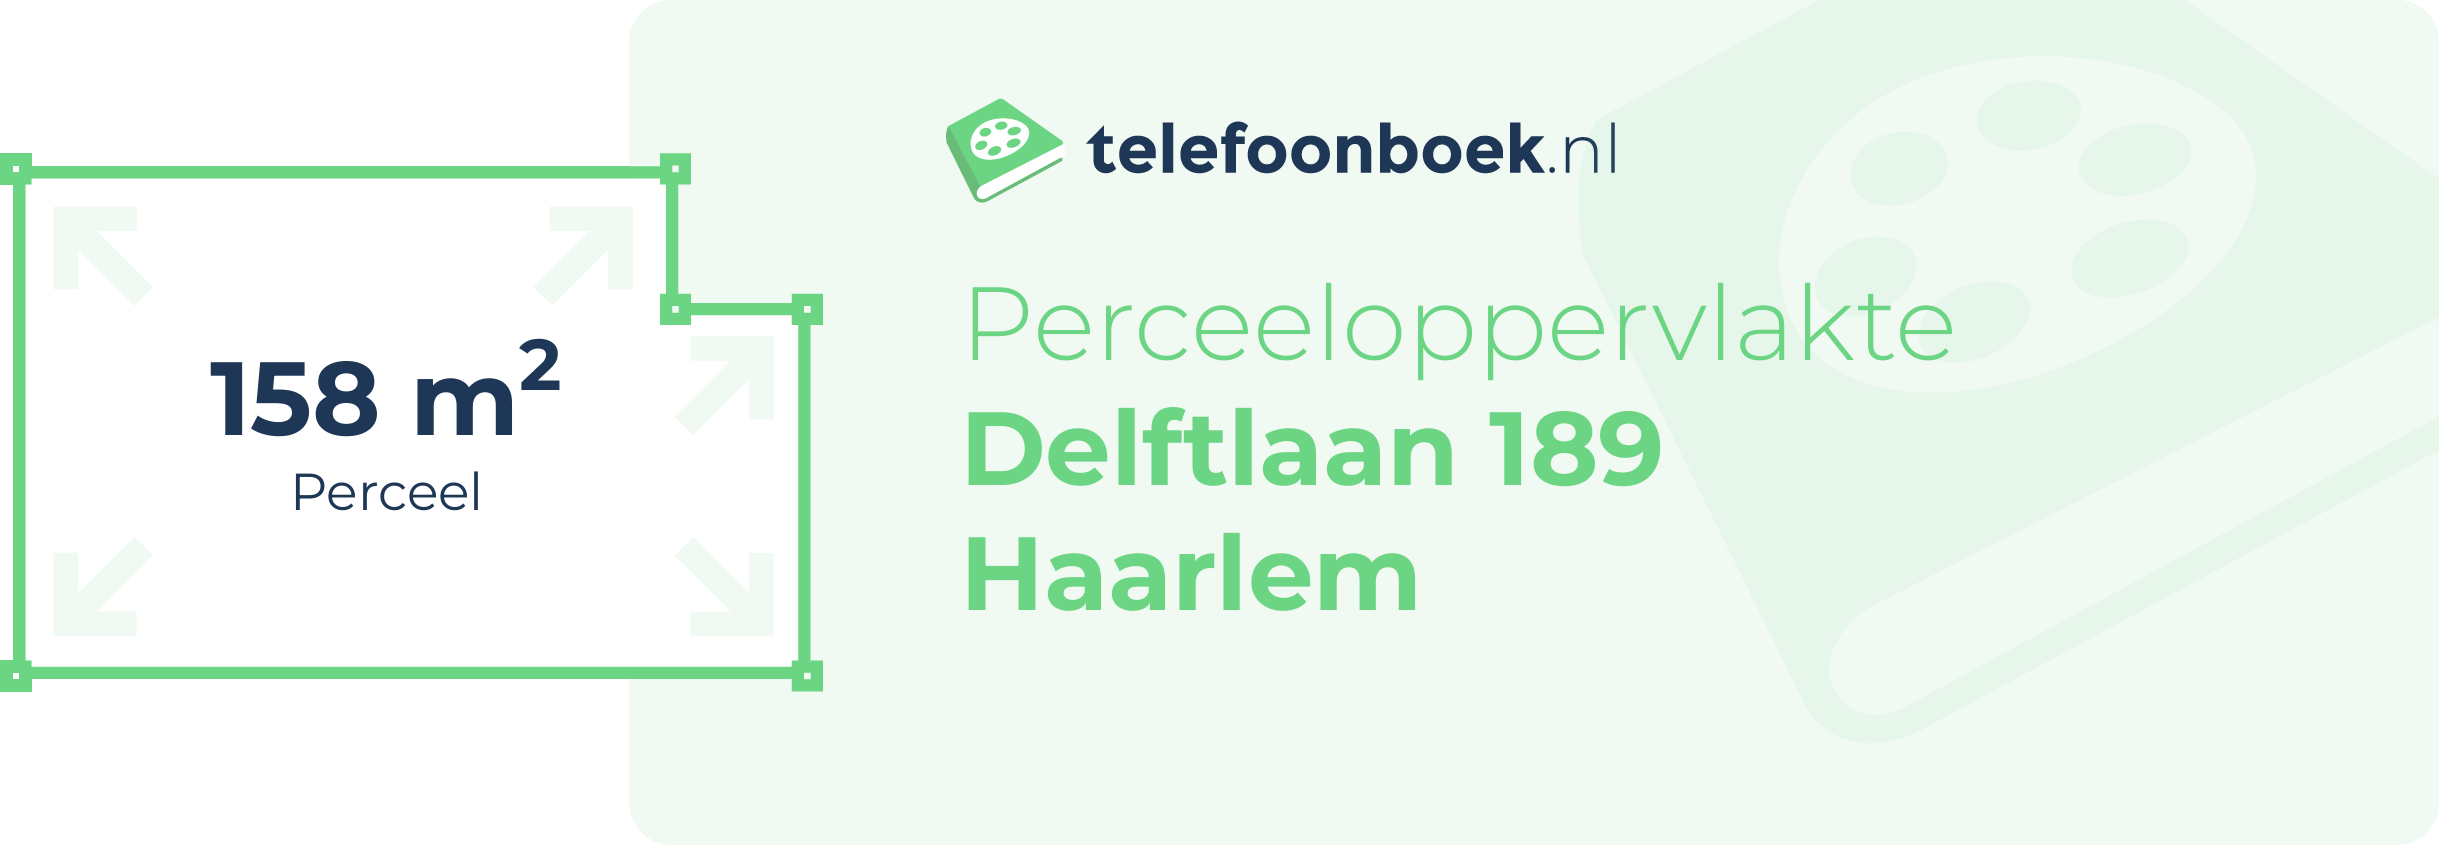 Perceeloppervlakte Delftlaan 189 Haarlem